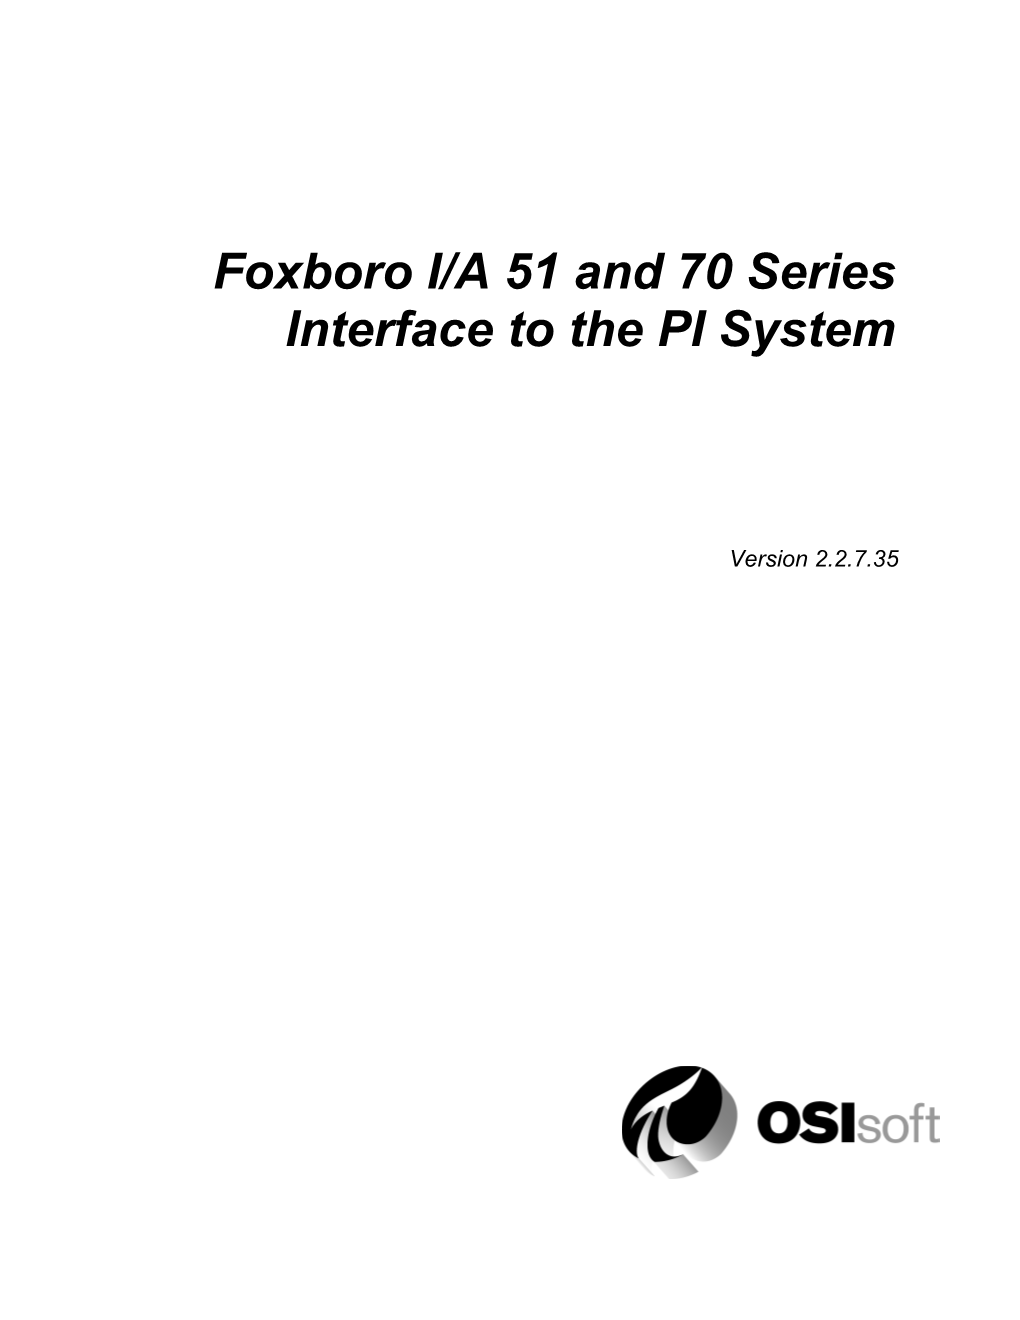 PI-Foxboro Interface